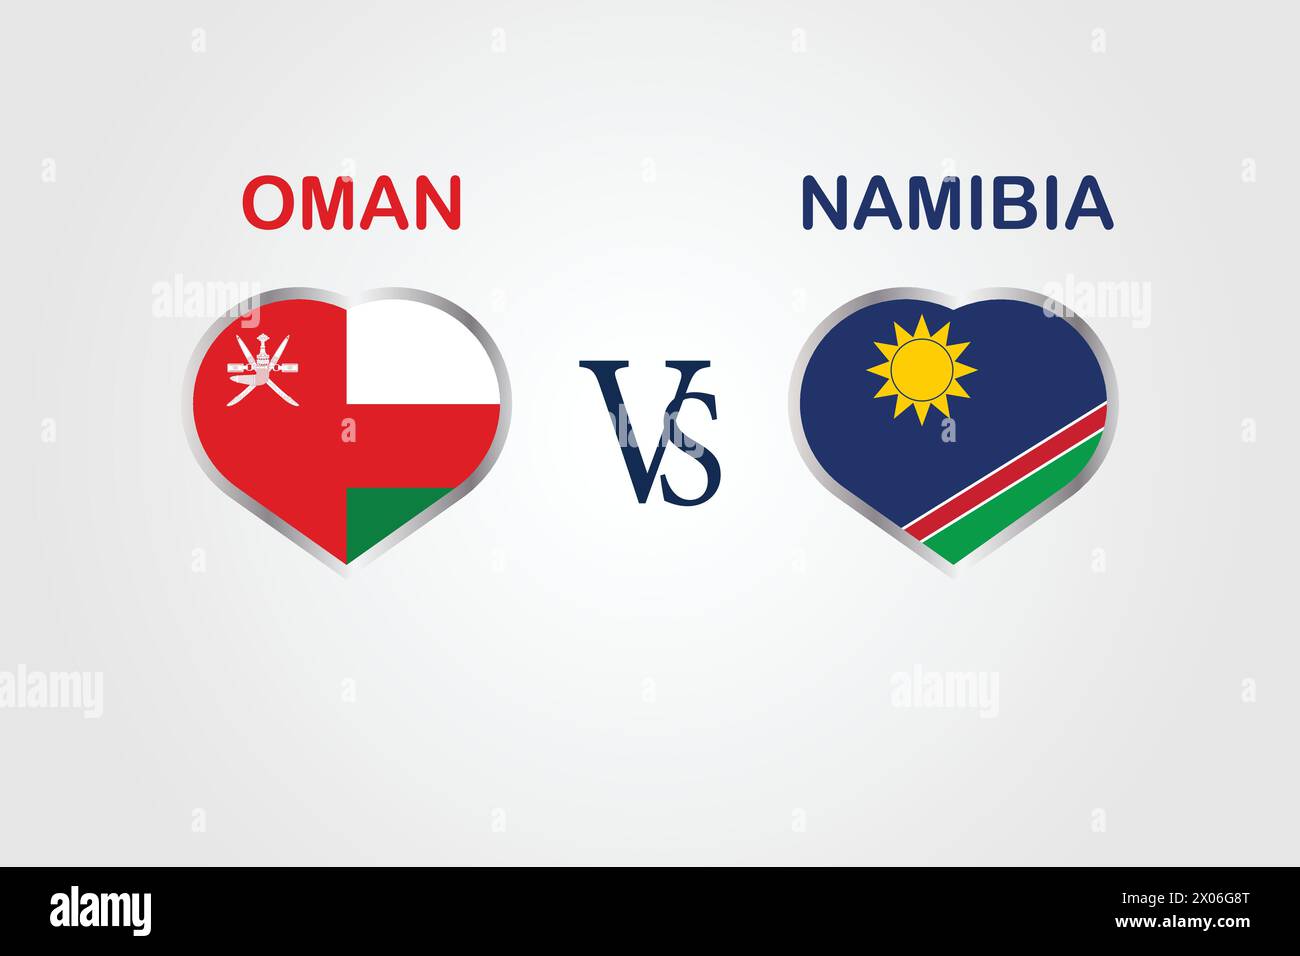 Oman VS Namibia, Cricket Match Konzept mit kreativer Illustration der Flagge der Teilnehmerländer Schlagmann und Herzen isoliert auf weißem Hintergrund Stock Vektor